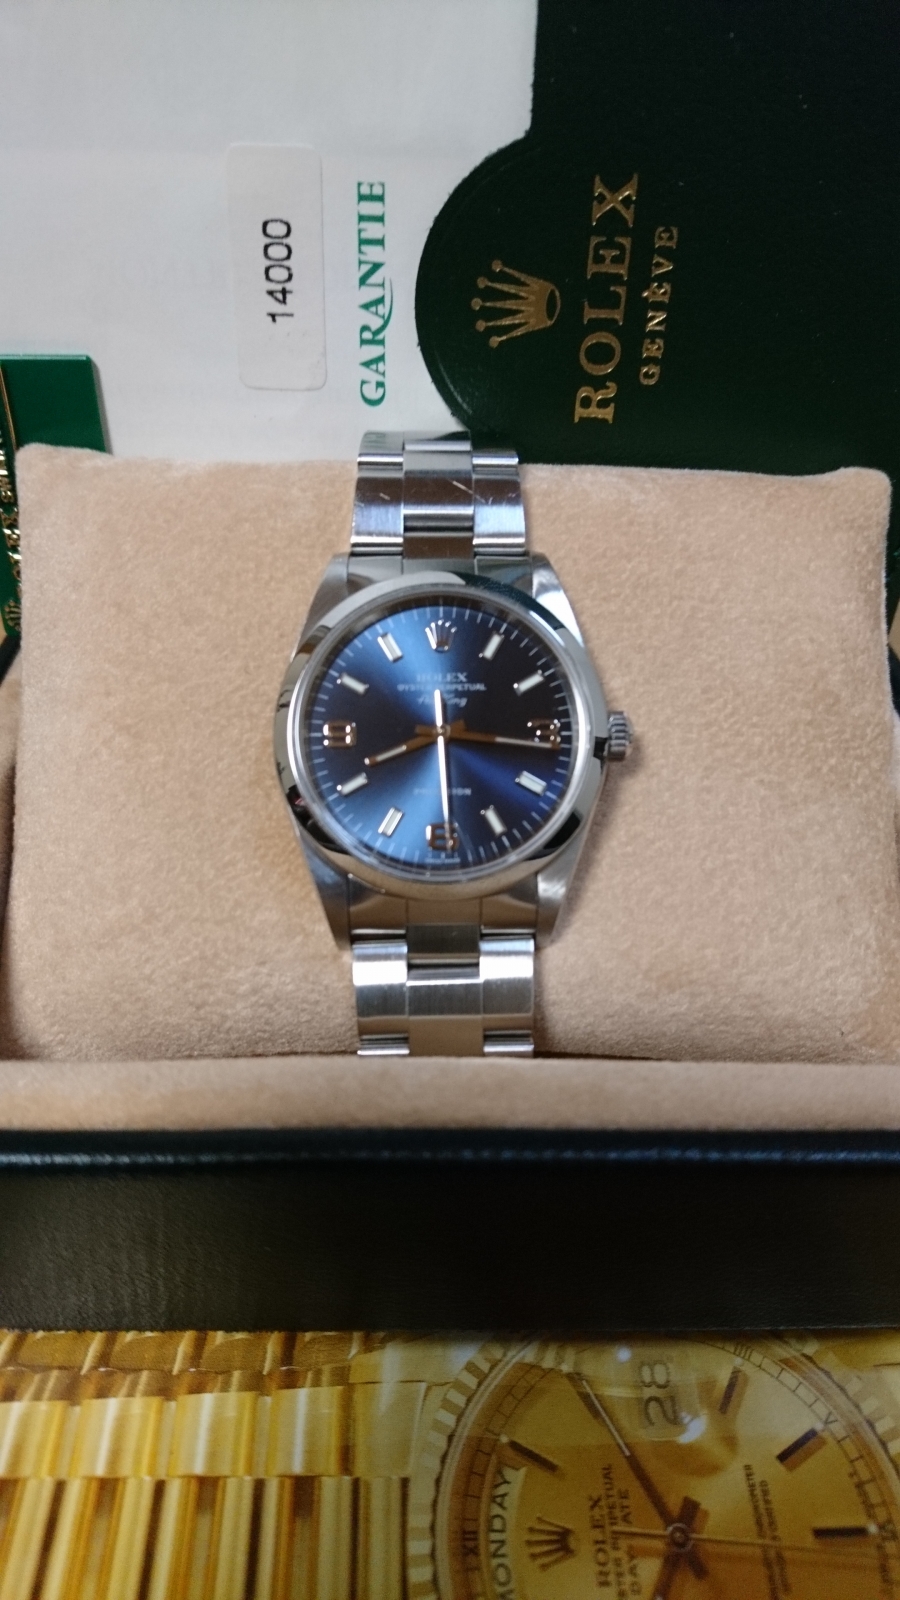 ロレックス ROLEX 14000 E番(1991年頃製造) ブルー メンズ 腕時計